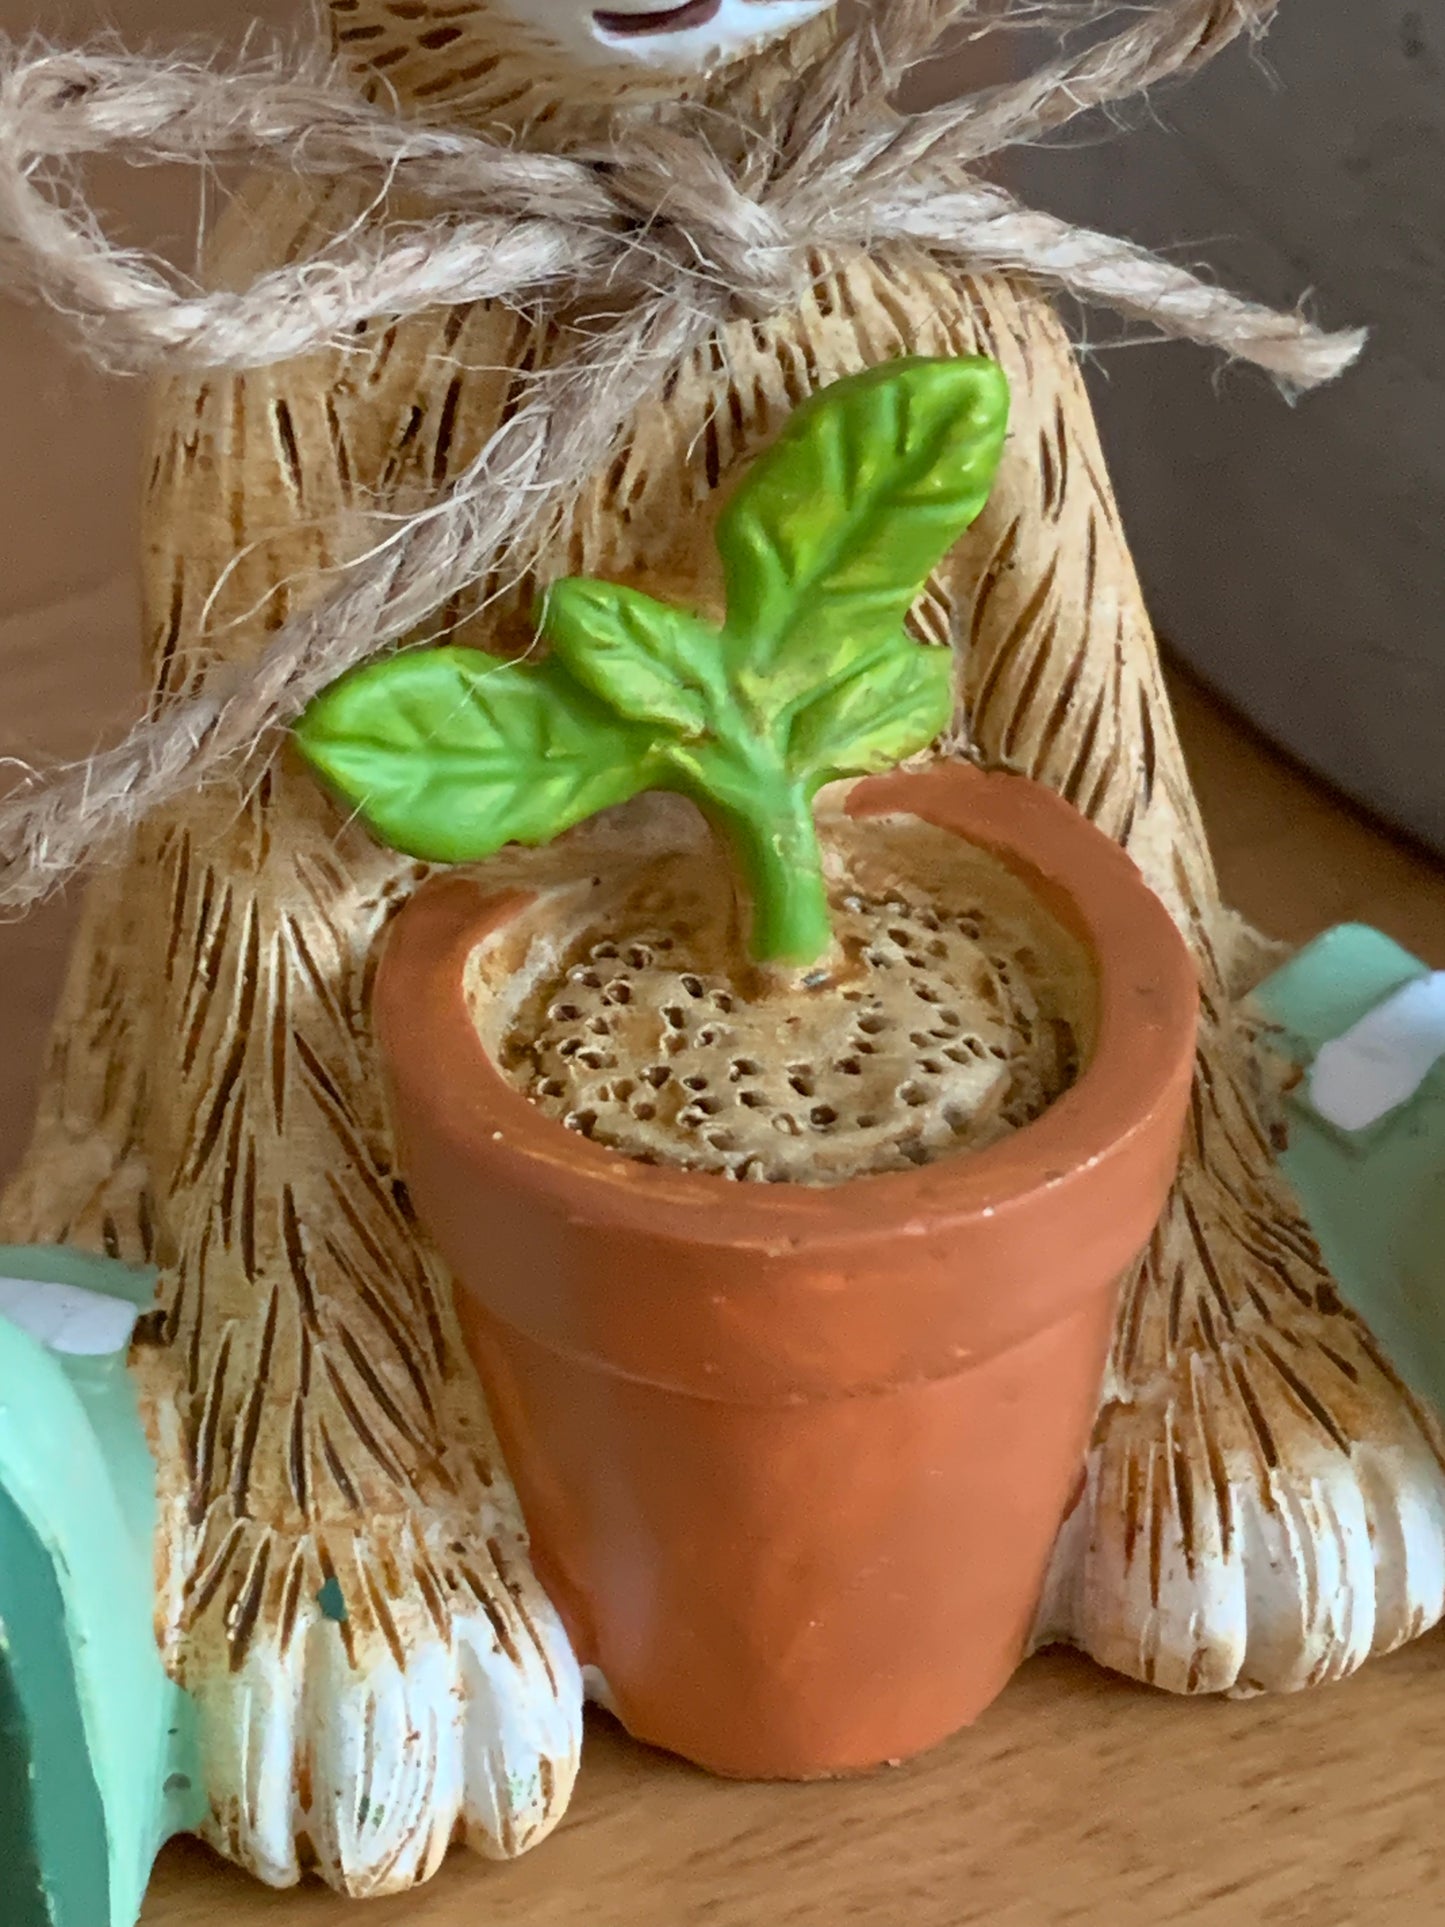 House Plant Bunny